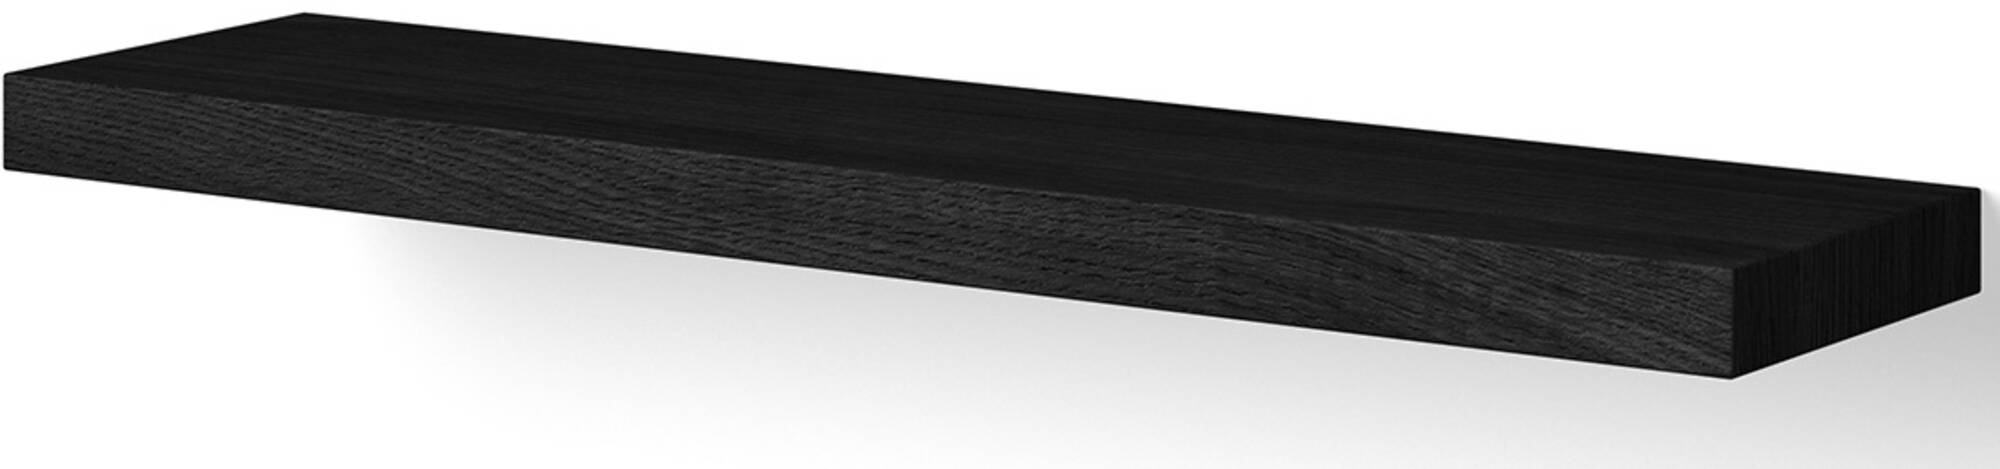 Looox Wooden Wall Shelf Free Wandplank 60x15x4 cm Black